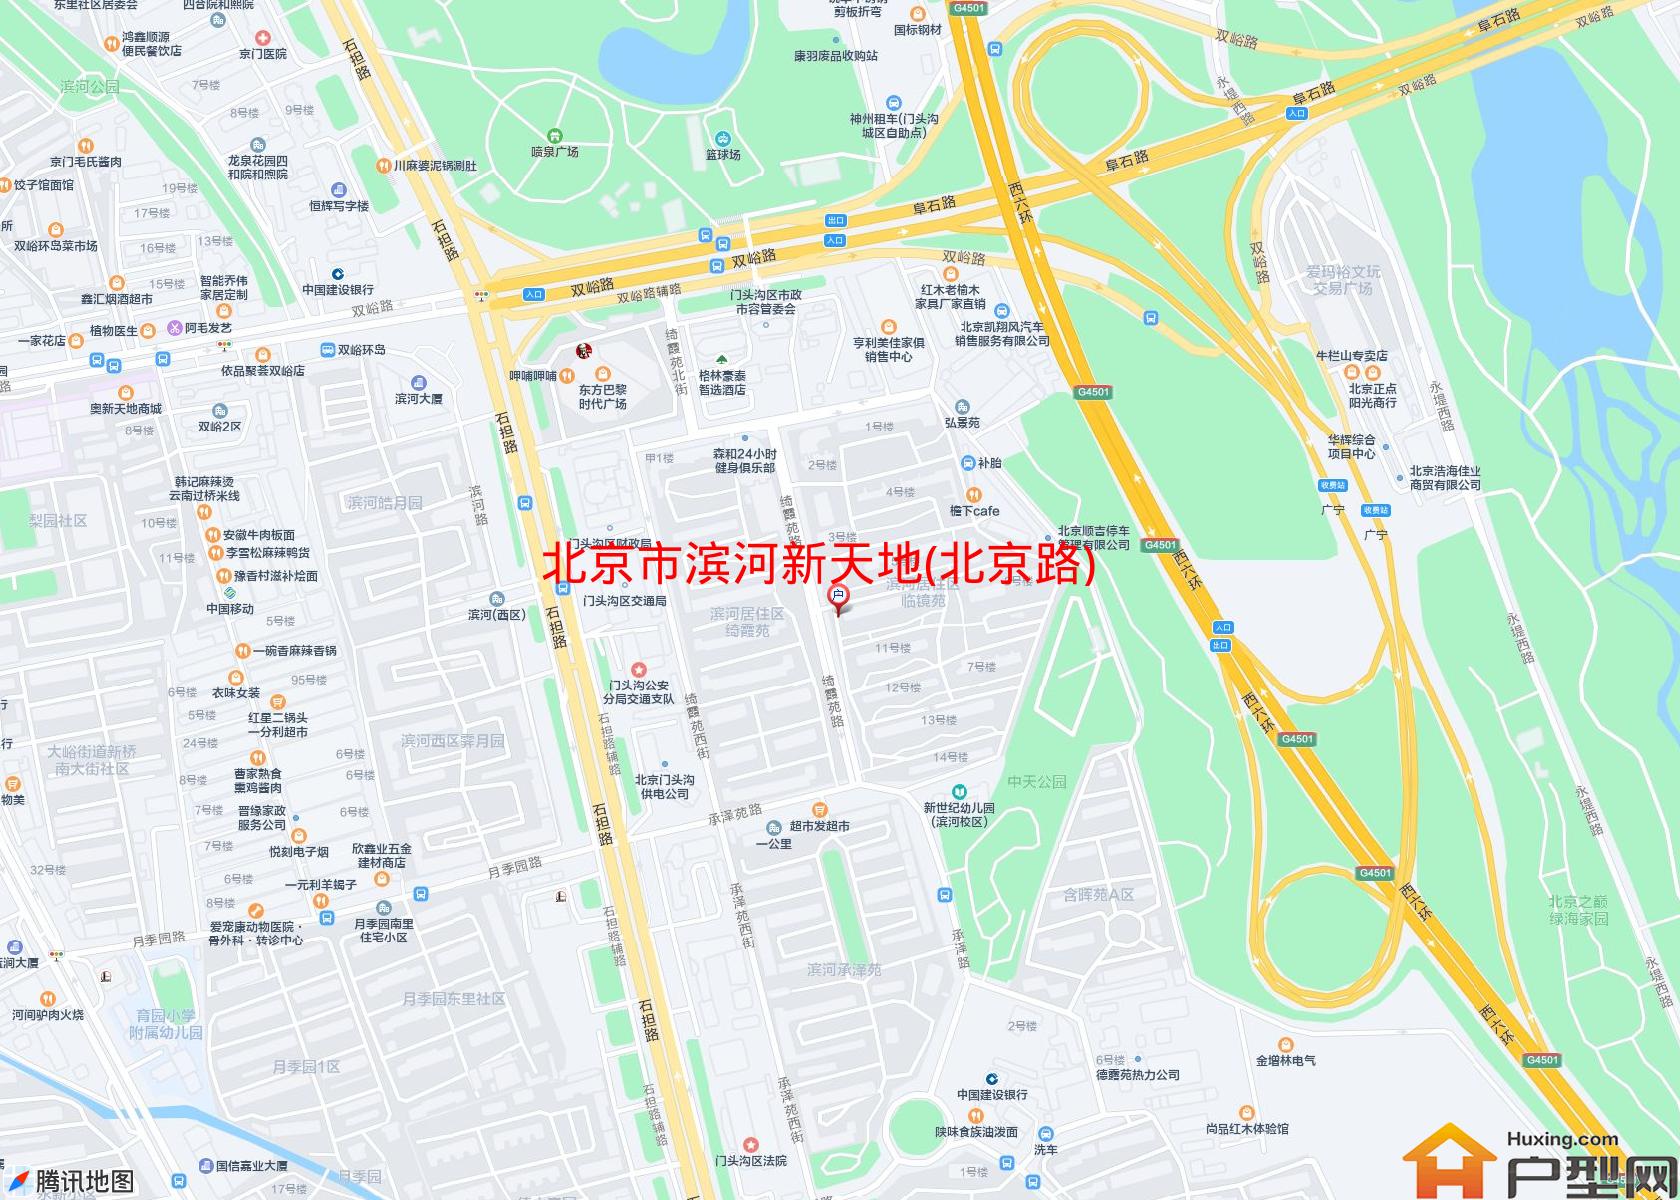 滨河新天地(北京路)小区 - 户型网